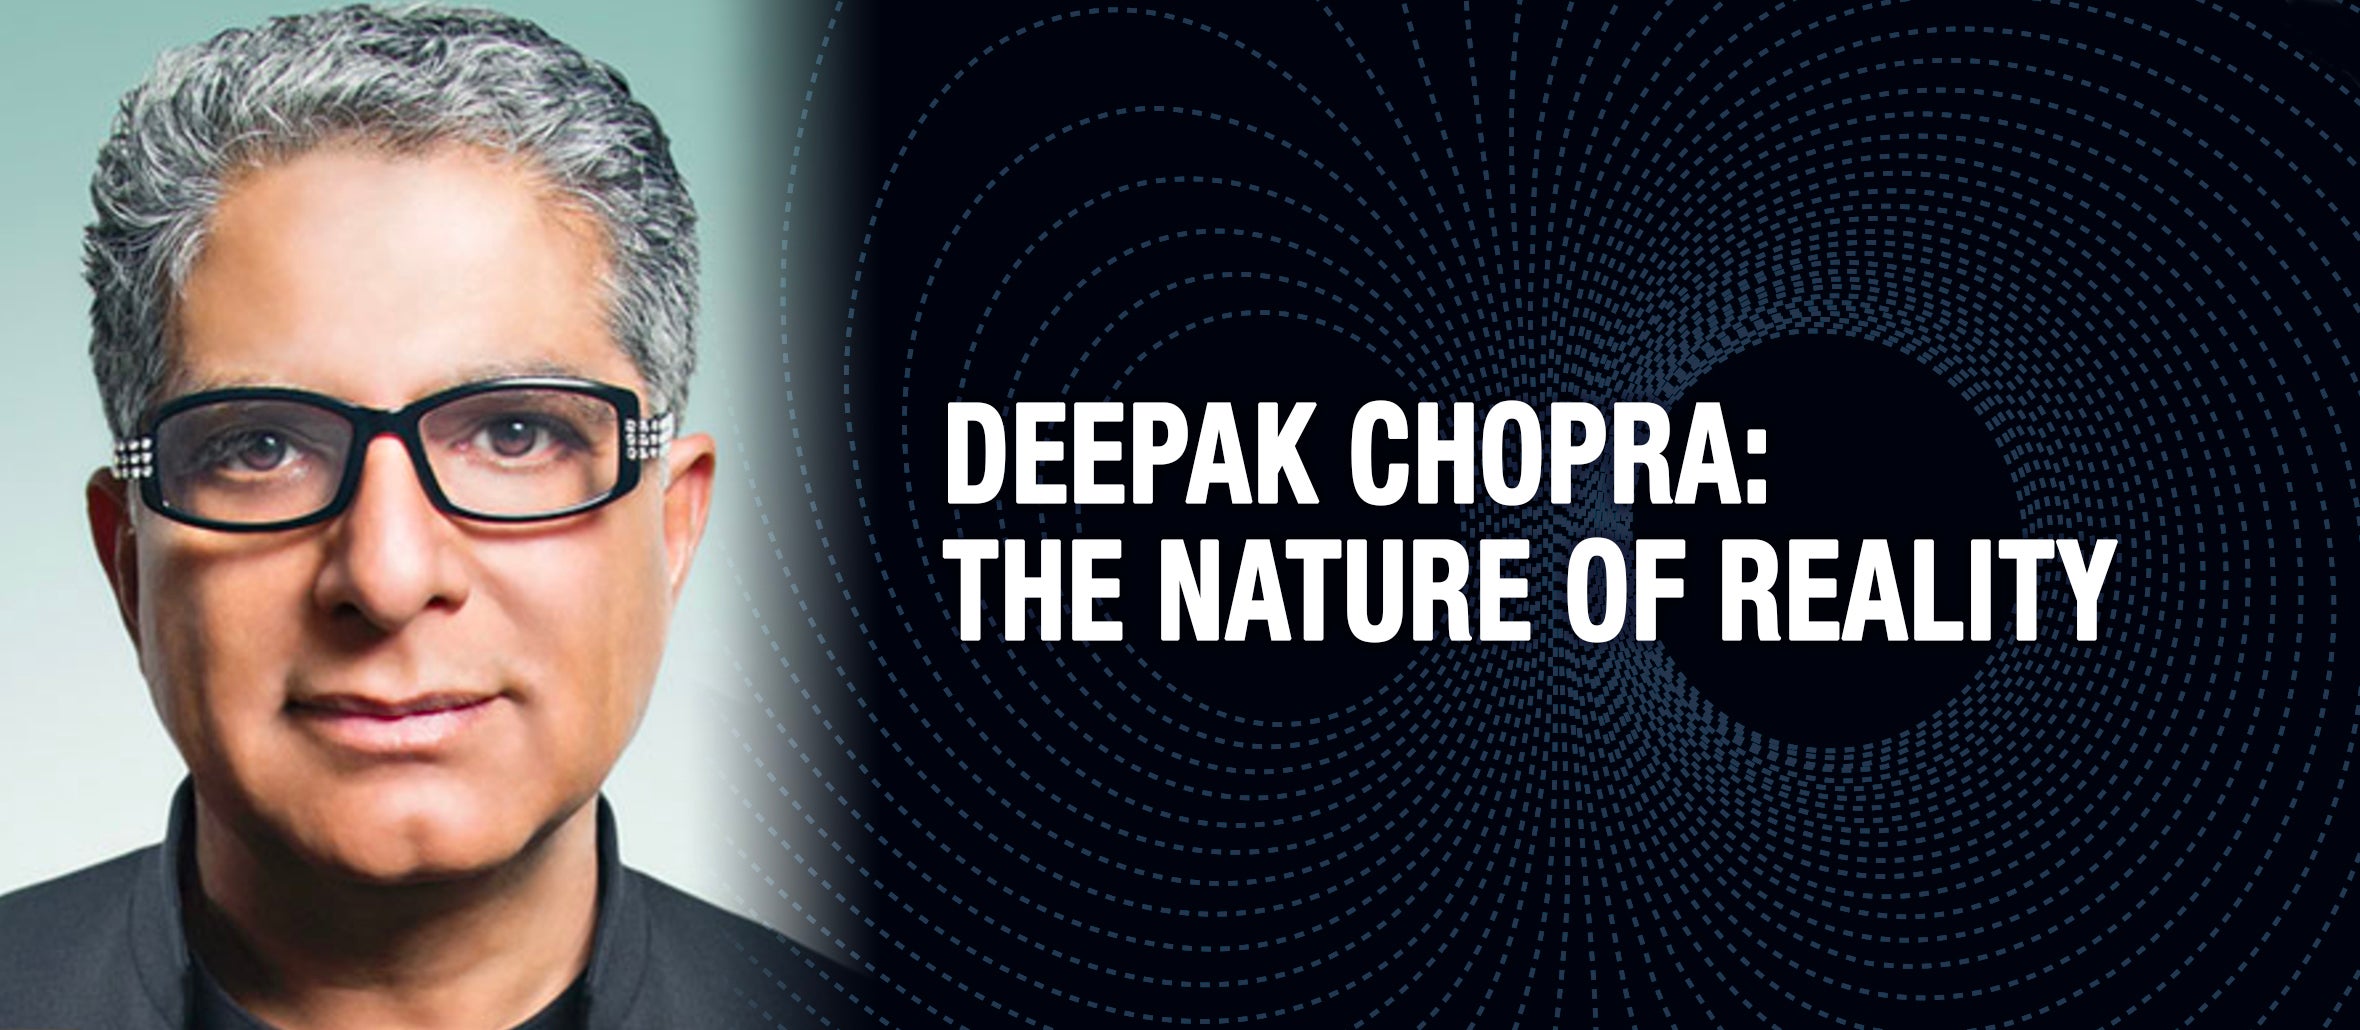 An Evening with DEEPAK CHOPRA